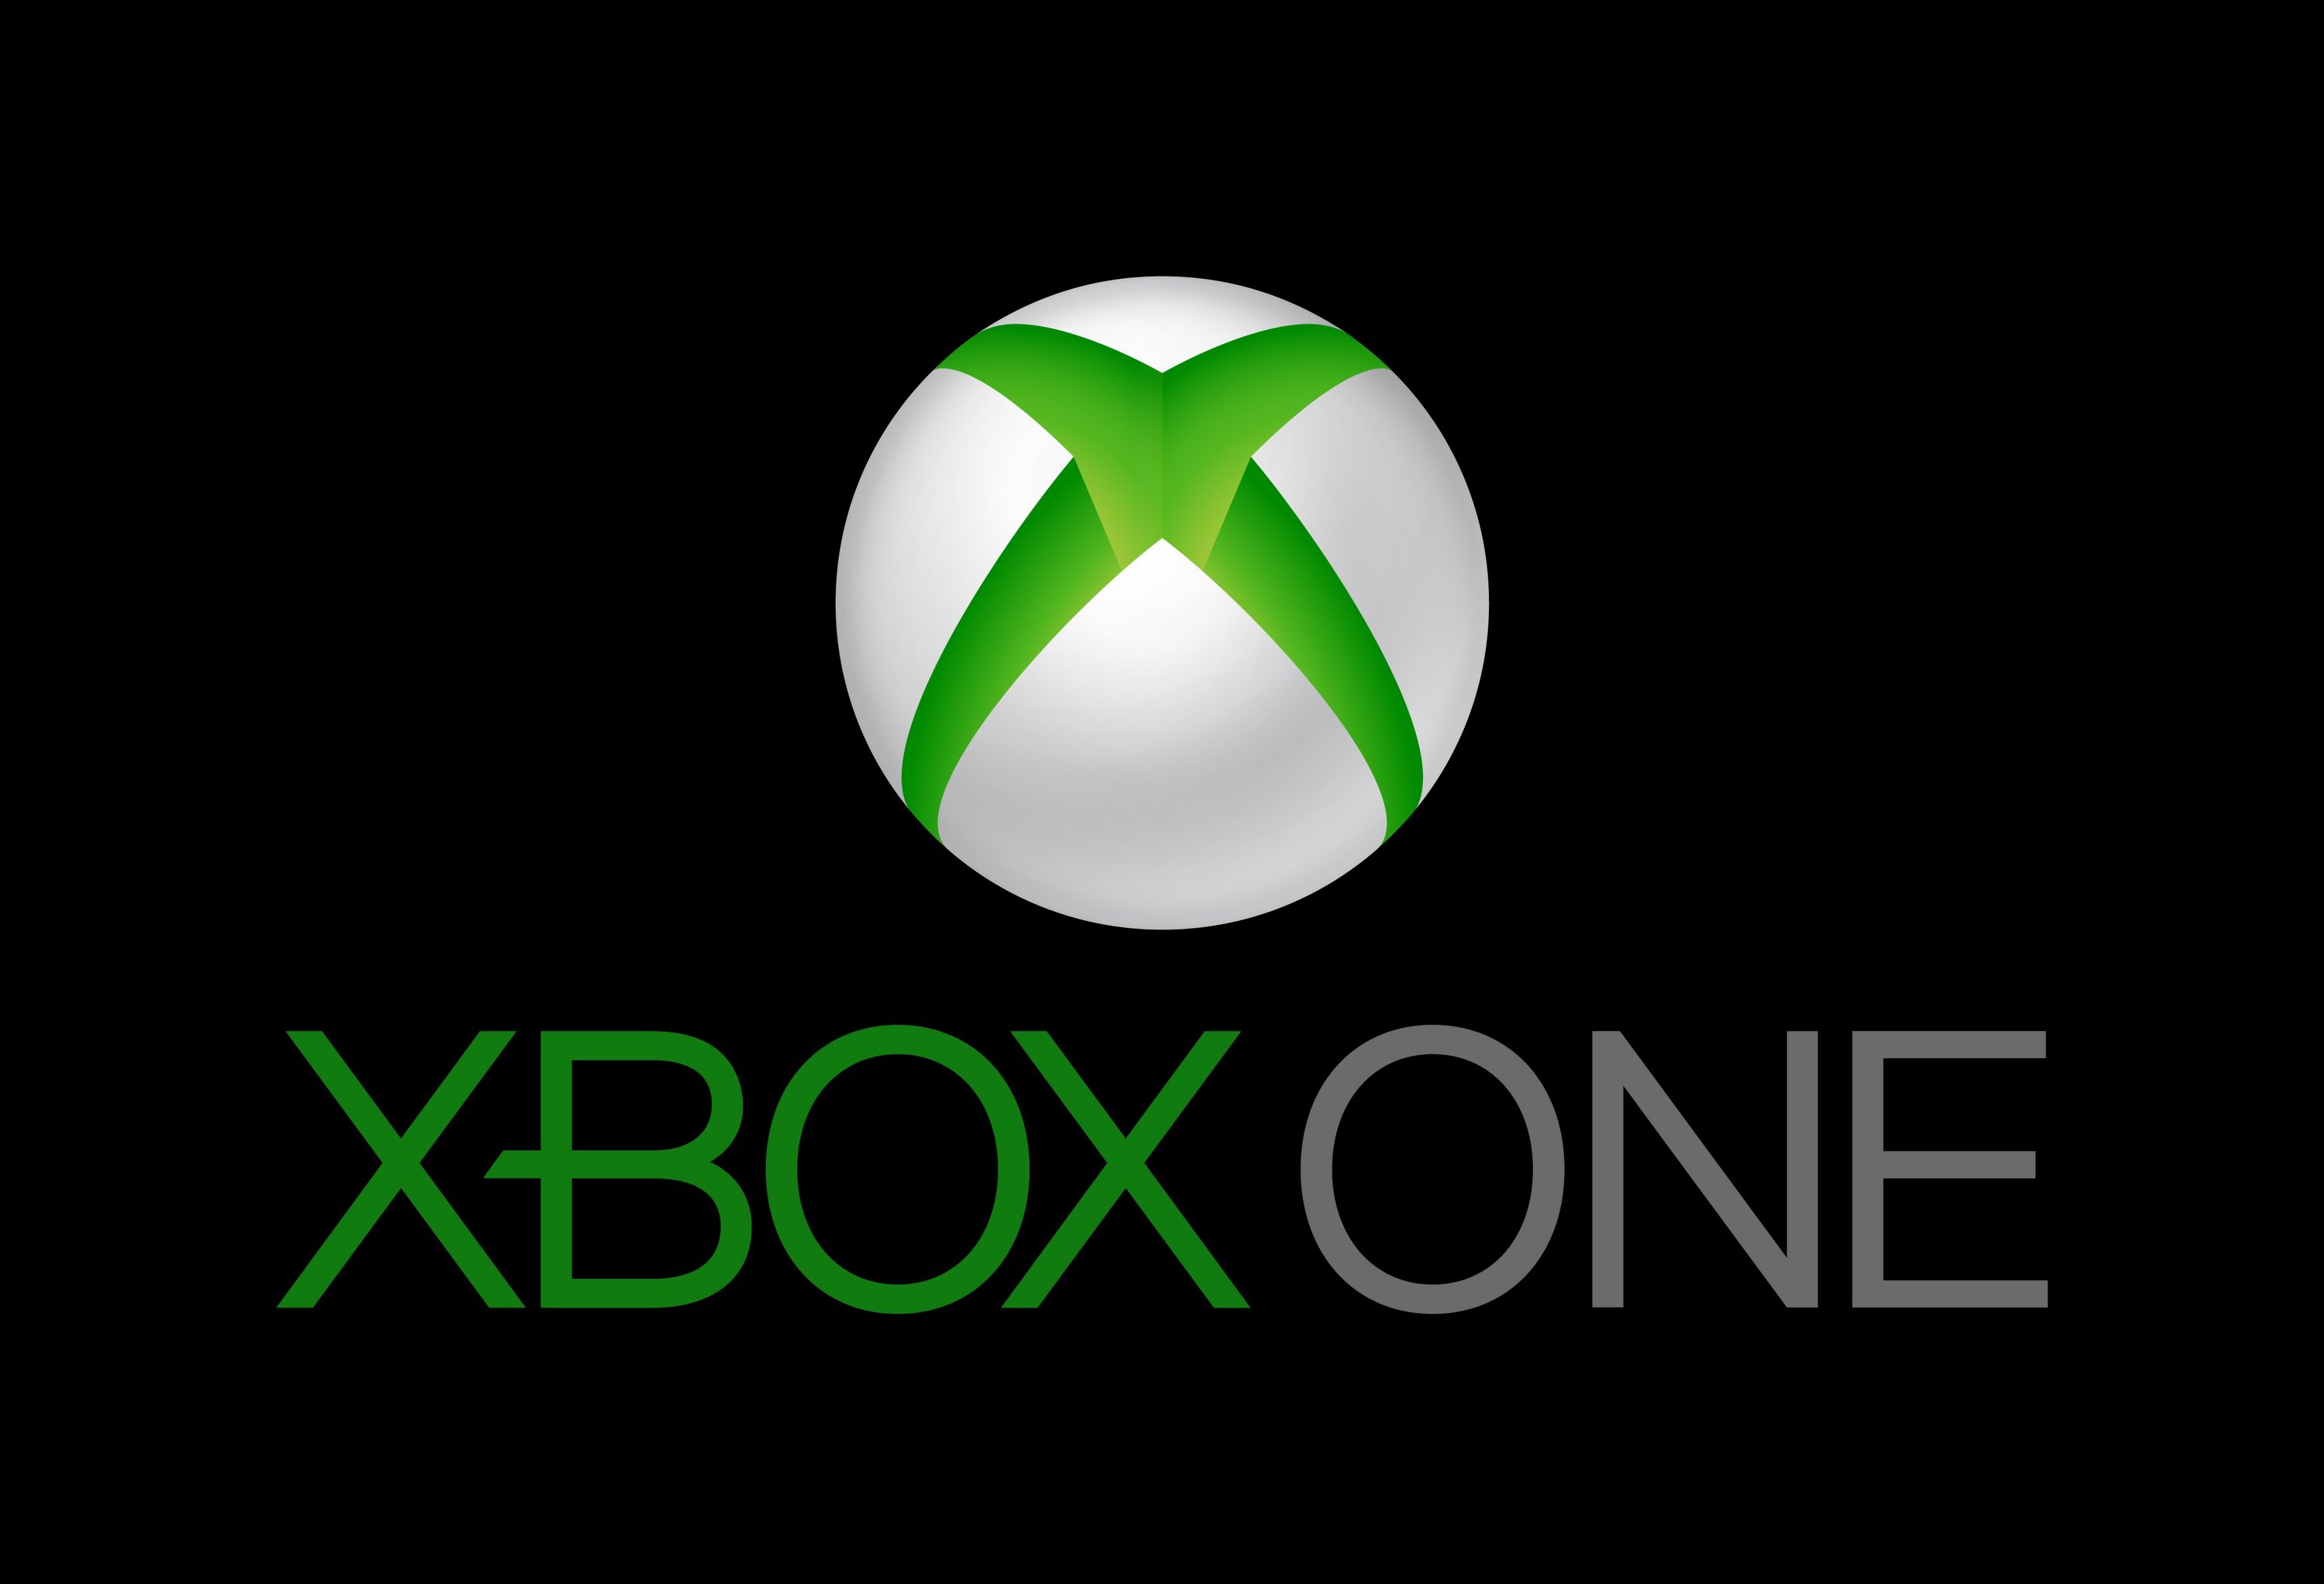 Xbox logo   Xbox one hd logo wallpaper   Xbox one logo   Xbox One